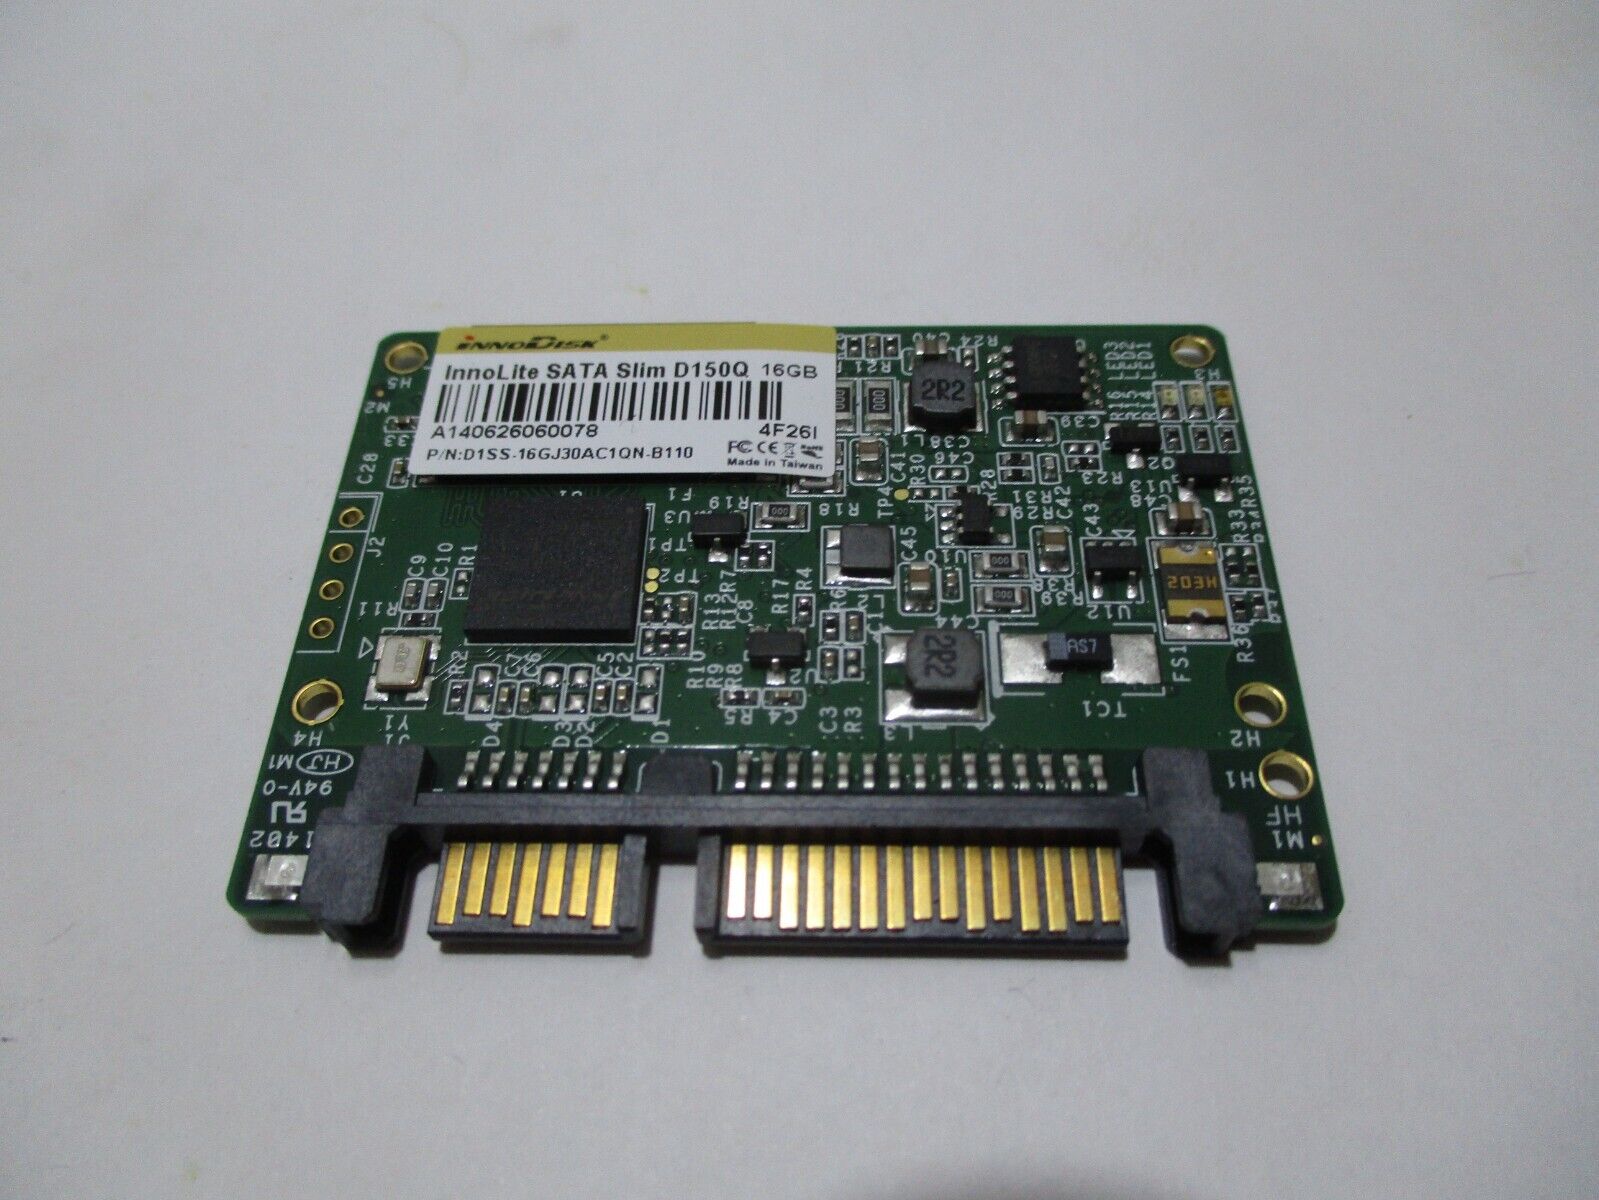 InnoDisk D1SS-16GJ30AC1QN-B110 InnoLite Slim D150Q 16GB SATA SSD